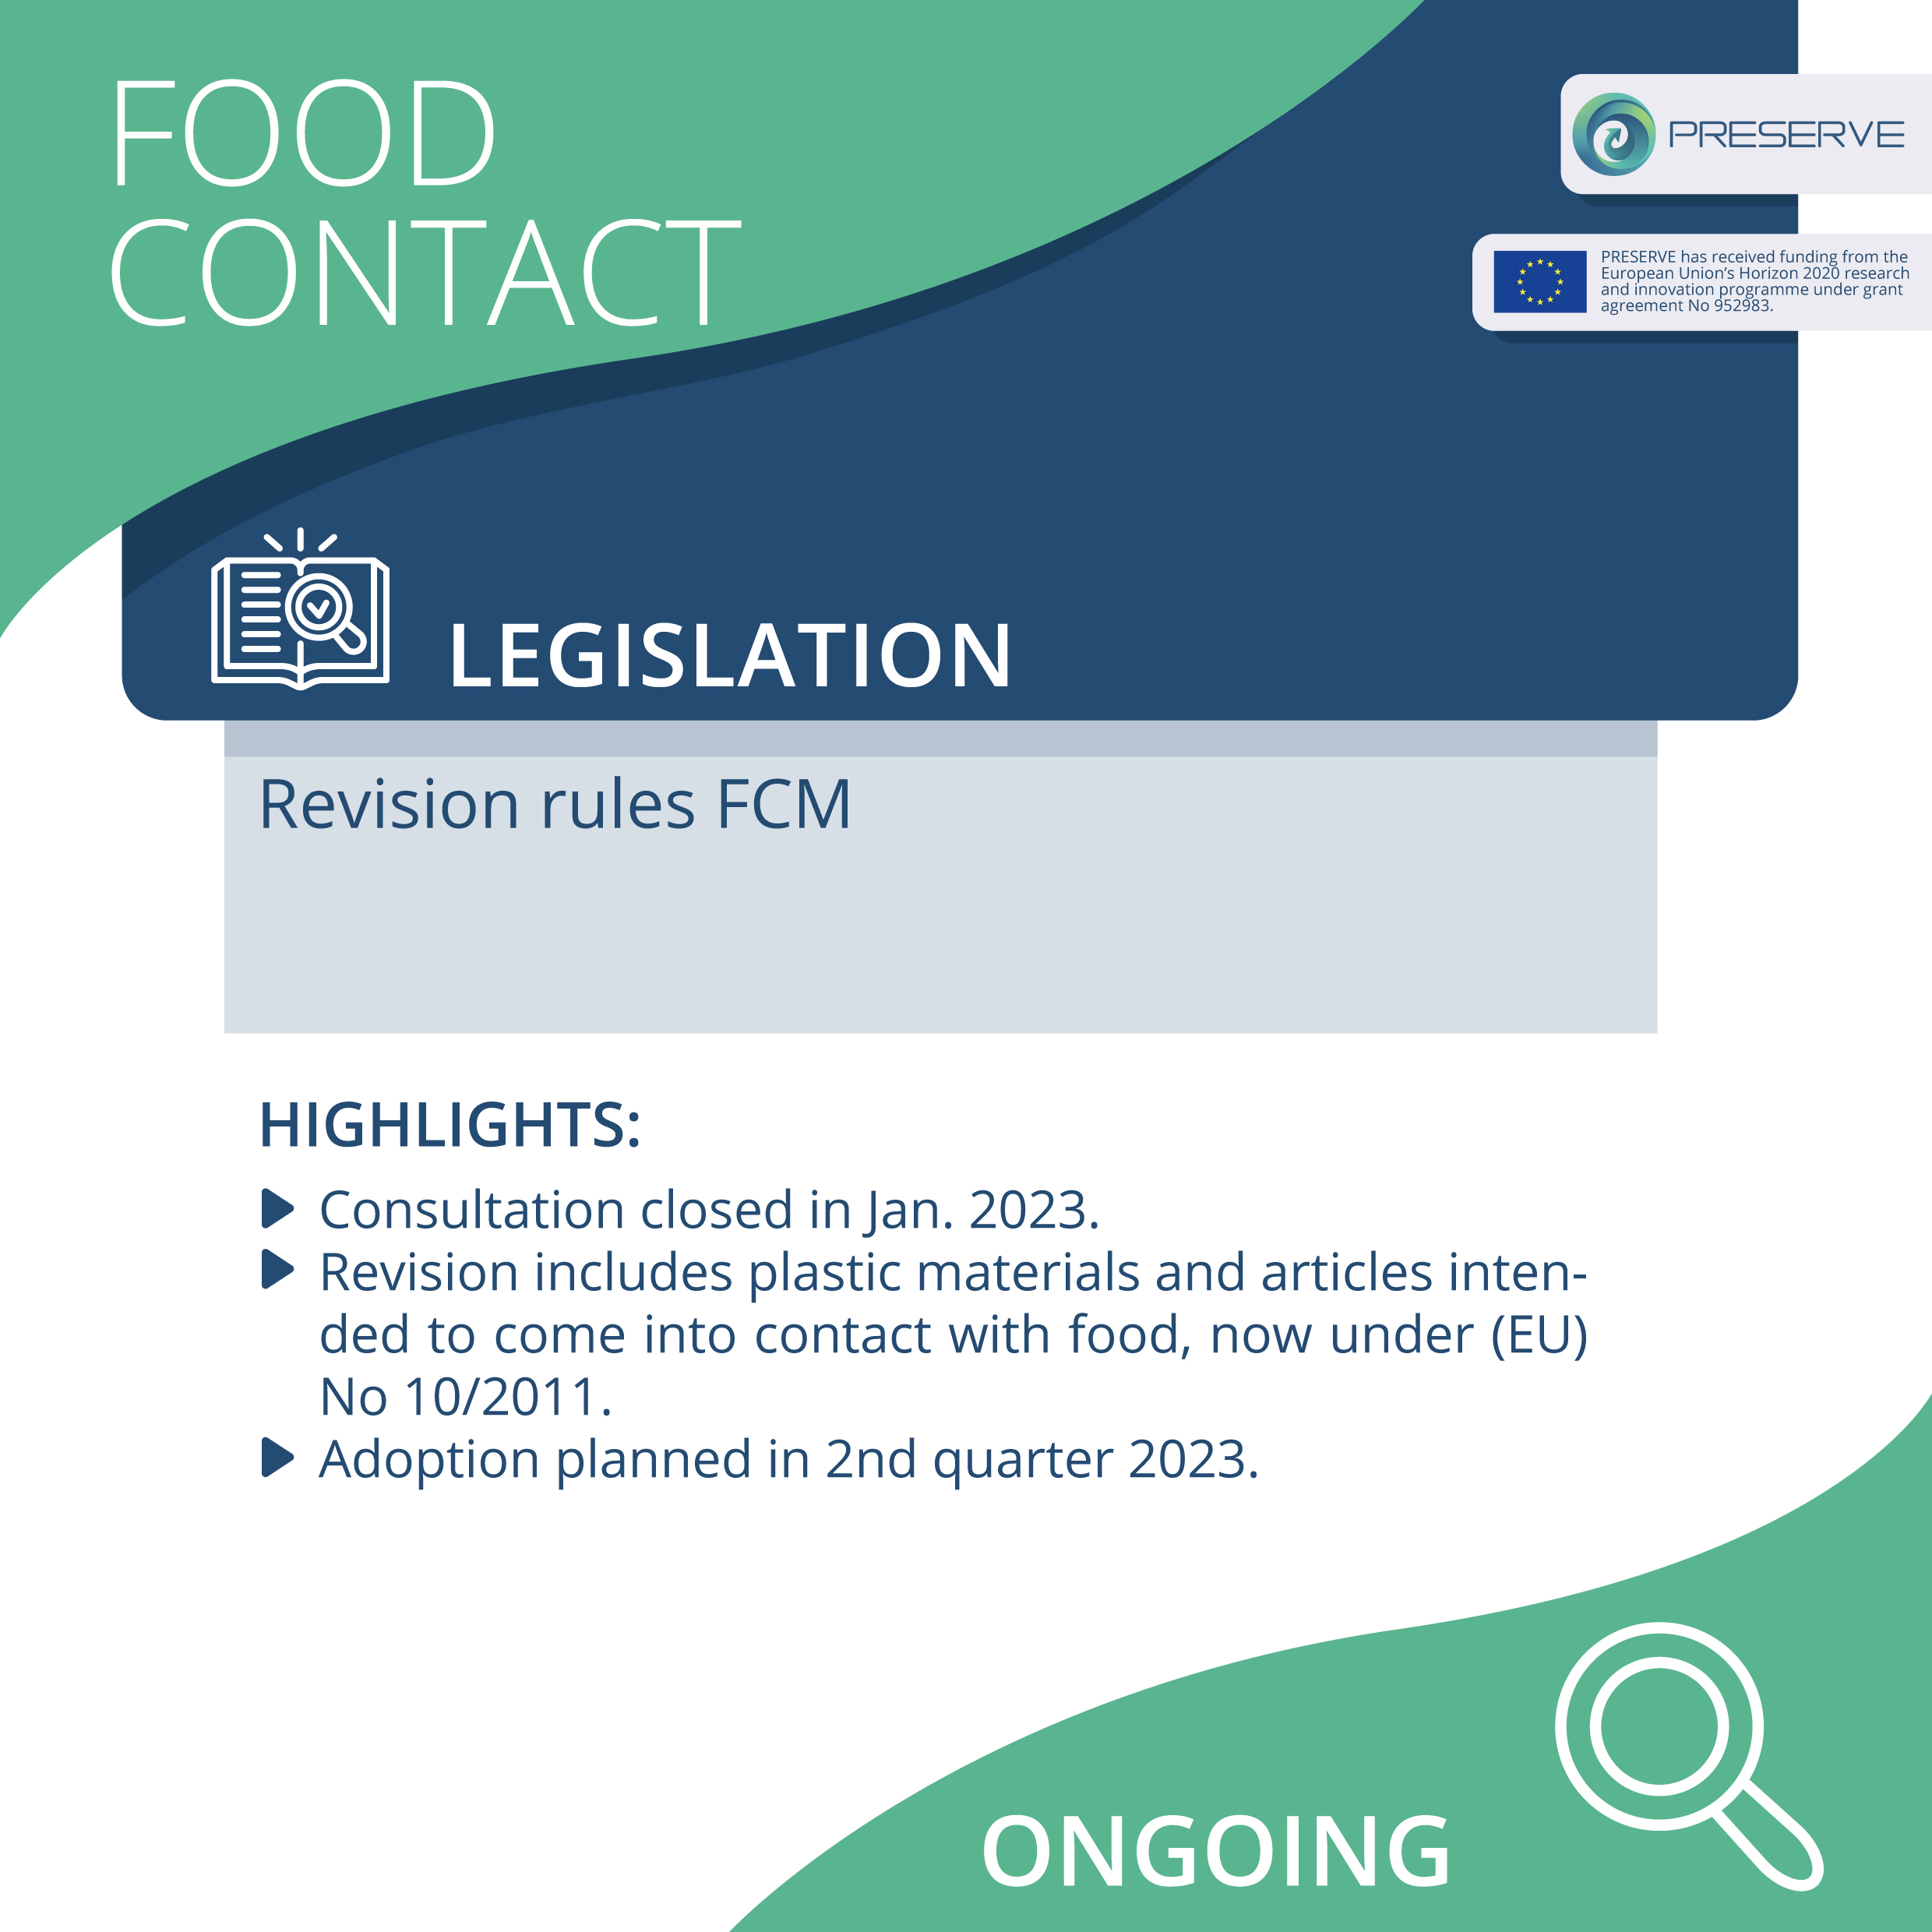 Food contact legislation and PRESERVE 2